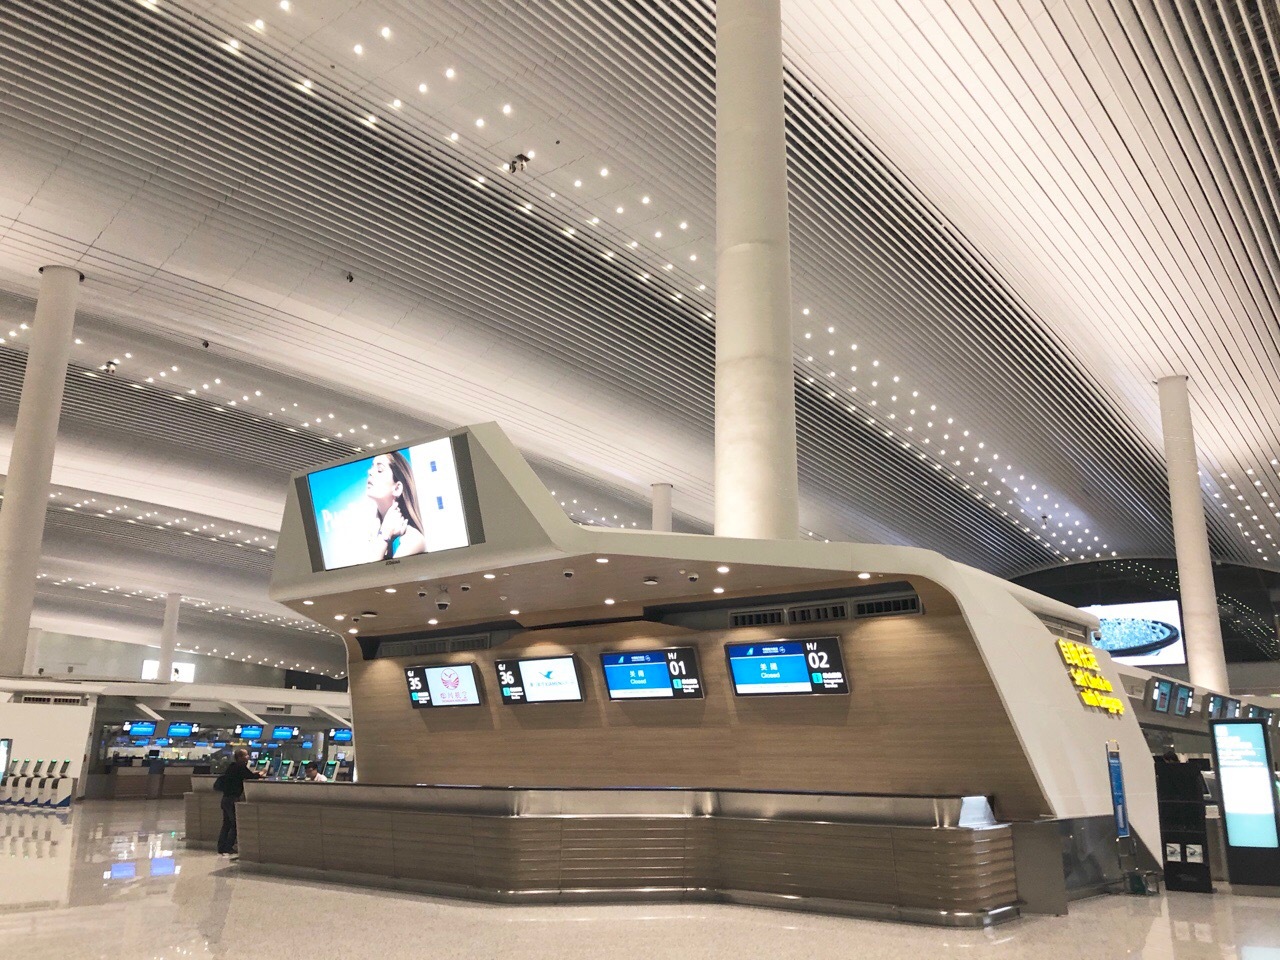 国内最大的单体航站楼--广州白云机场T2